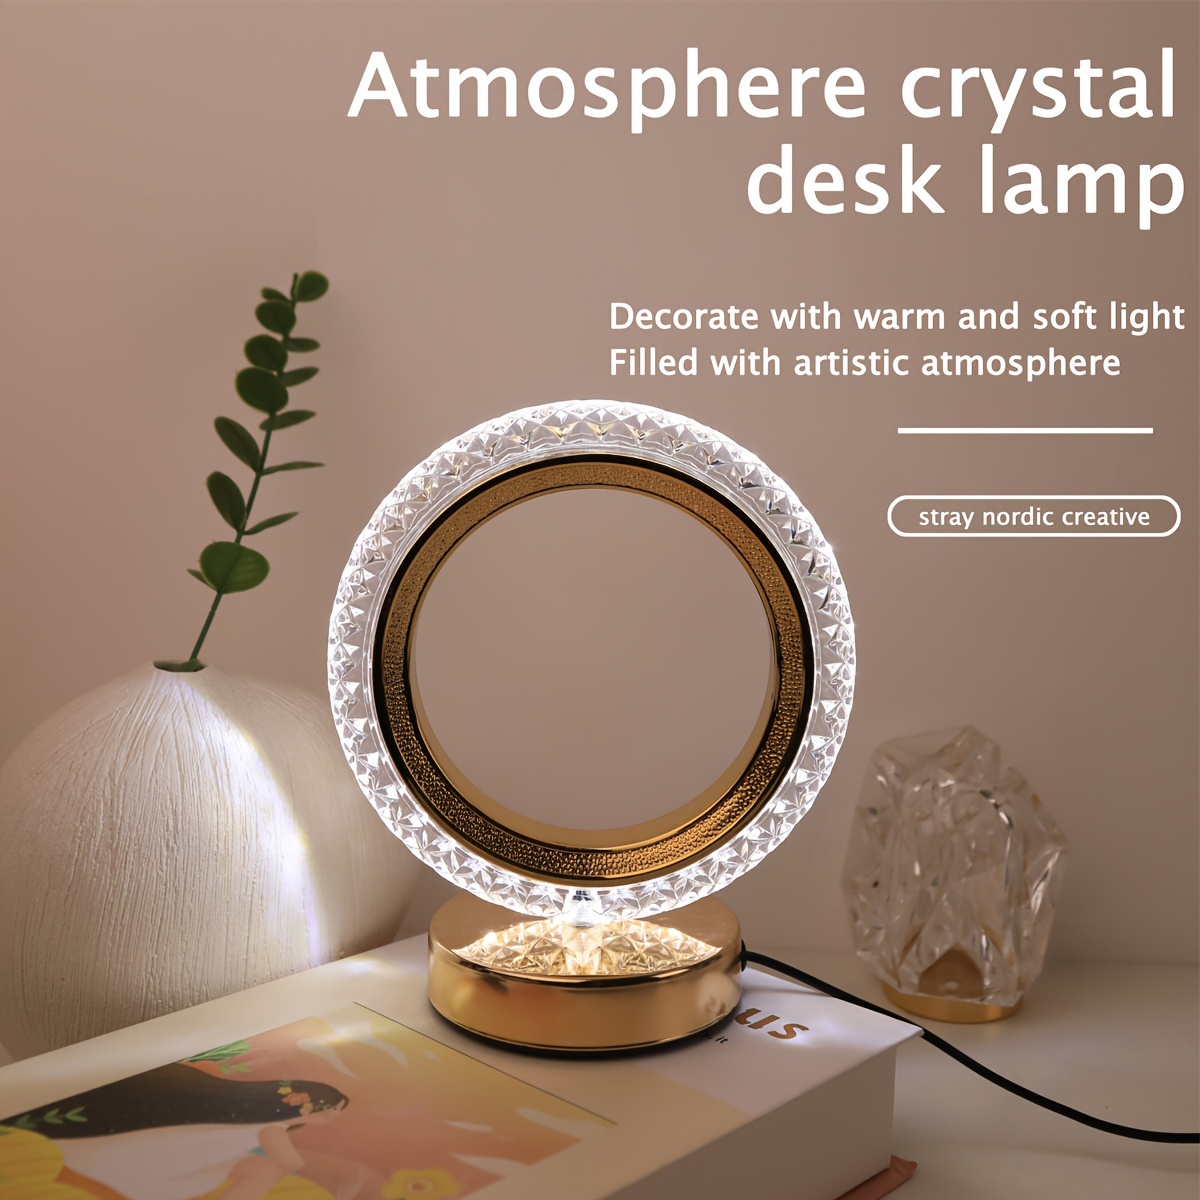 Lampe de chevet Led Design, Spirallight mini